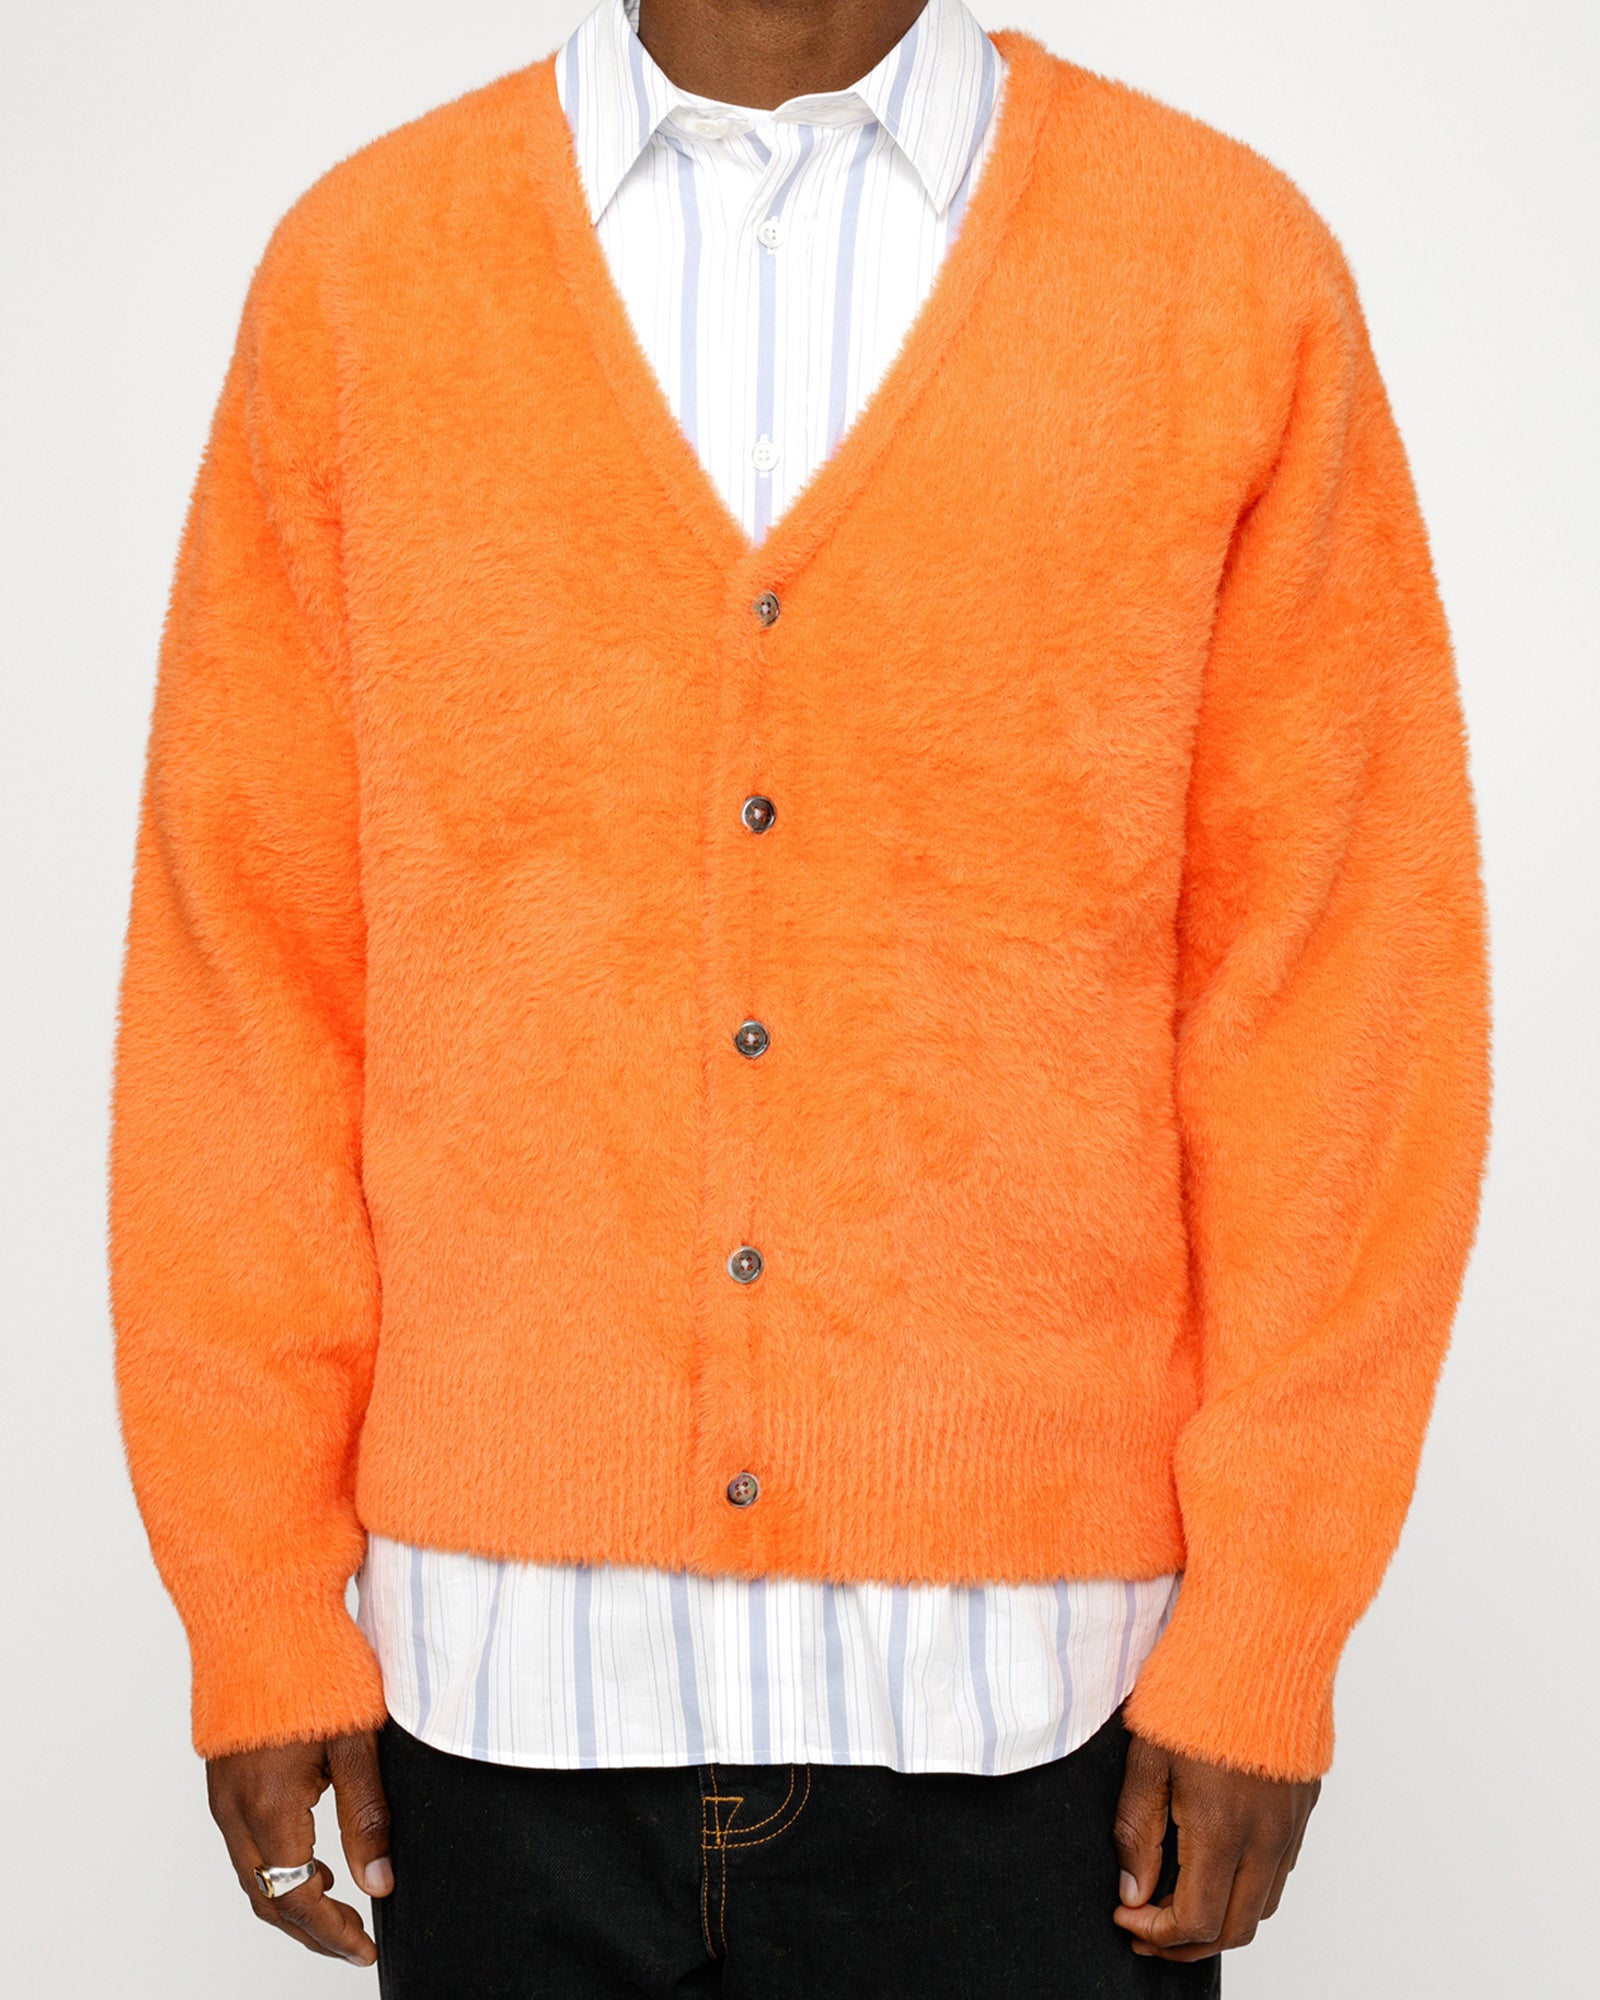 Shaggy Cardigan in red orange – Stüssy